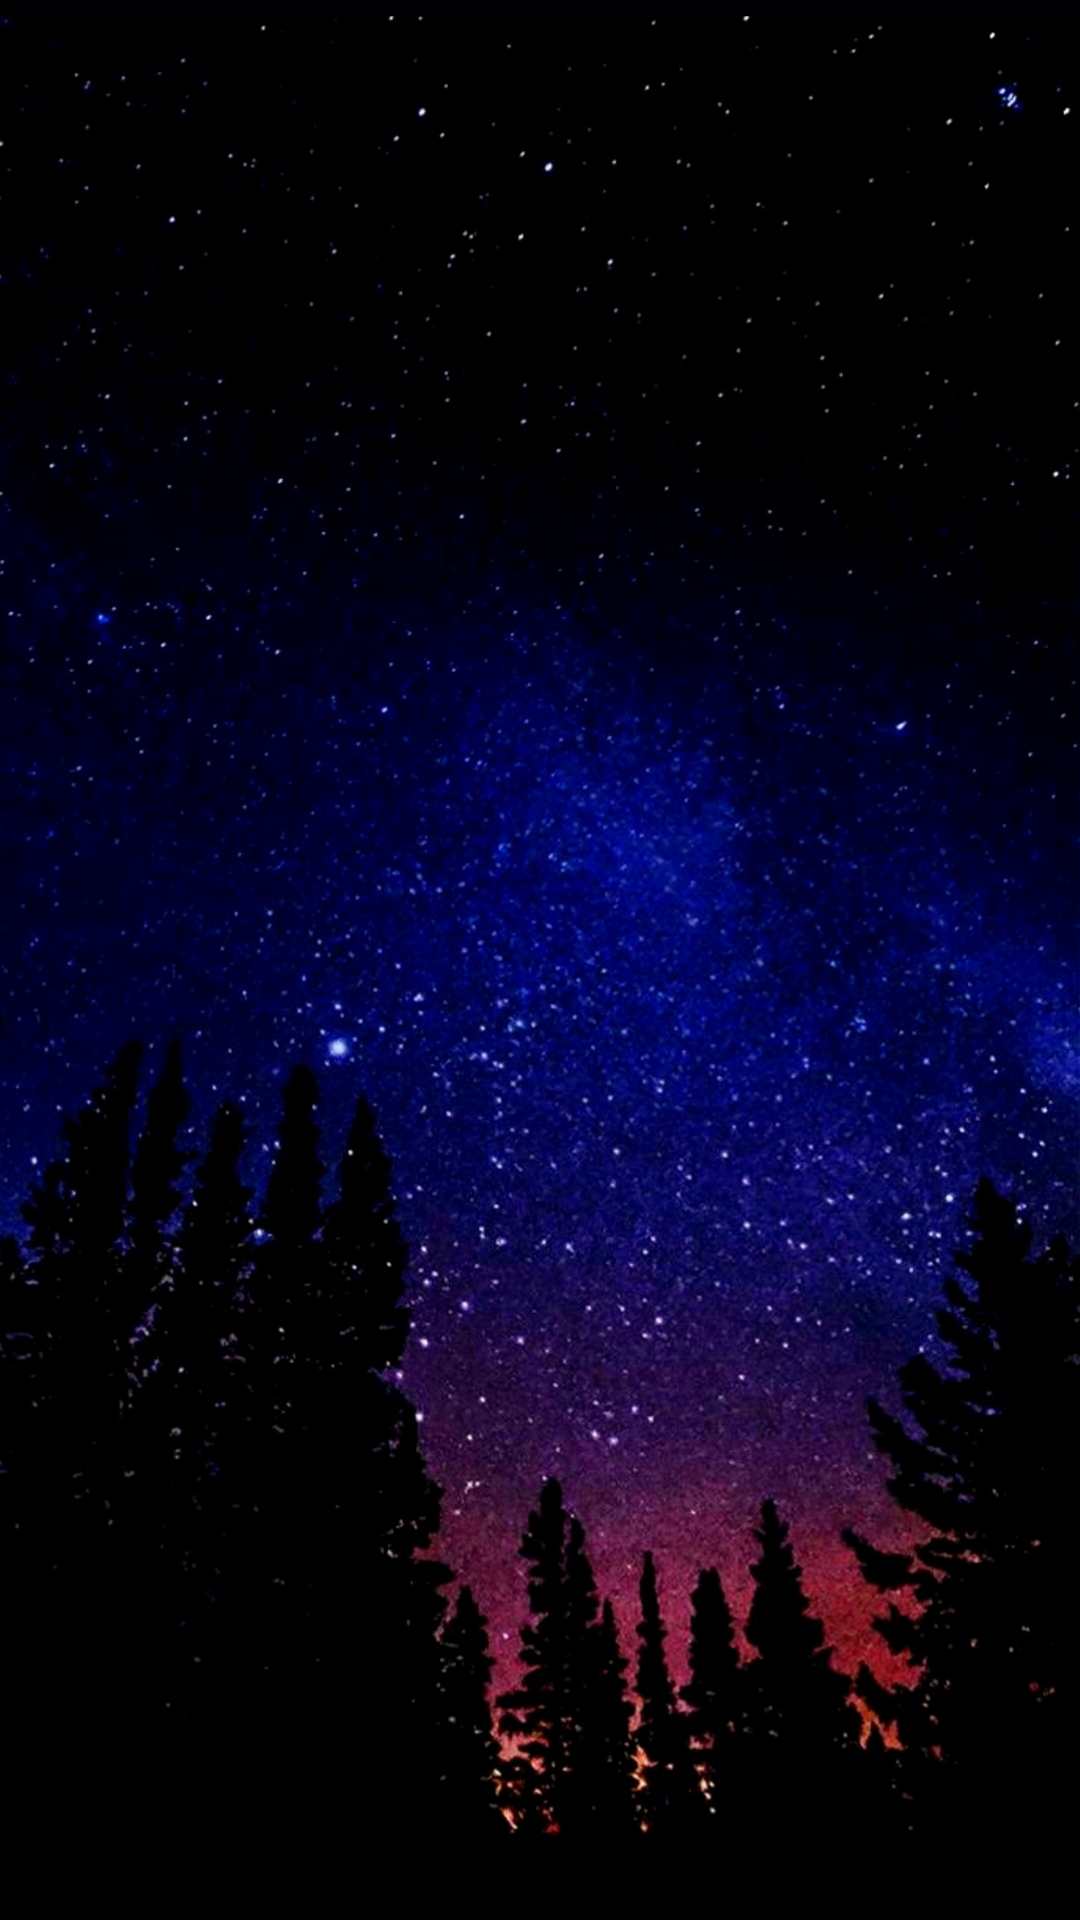 Sky Full of Stars